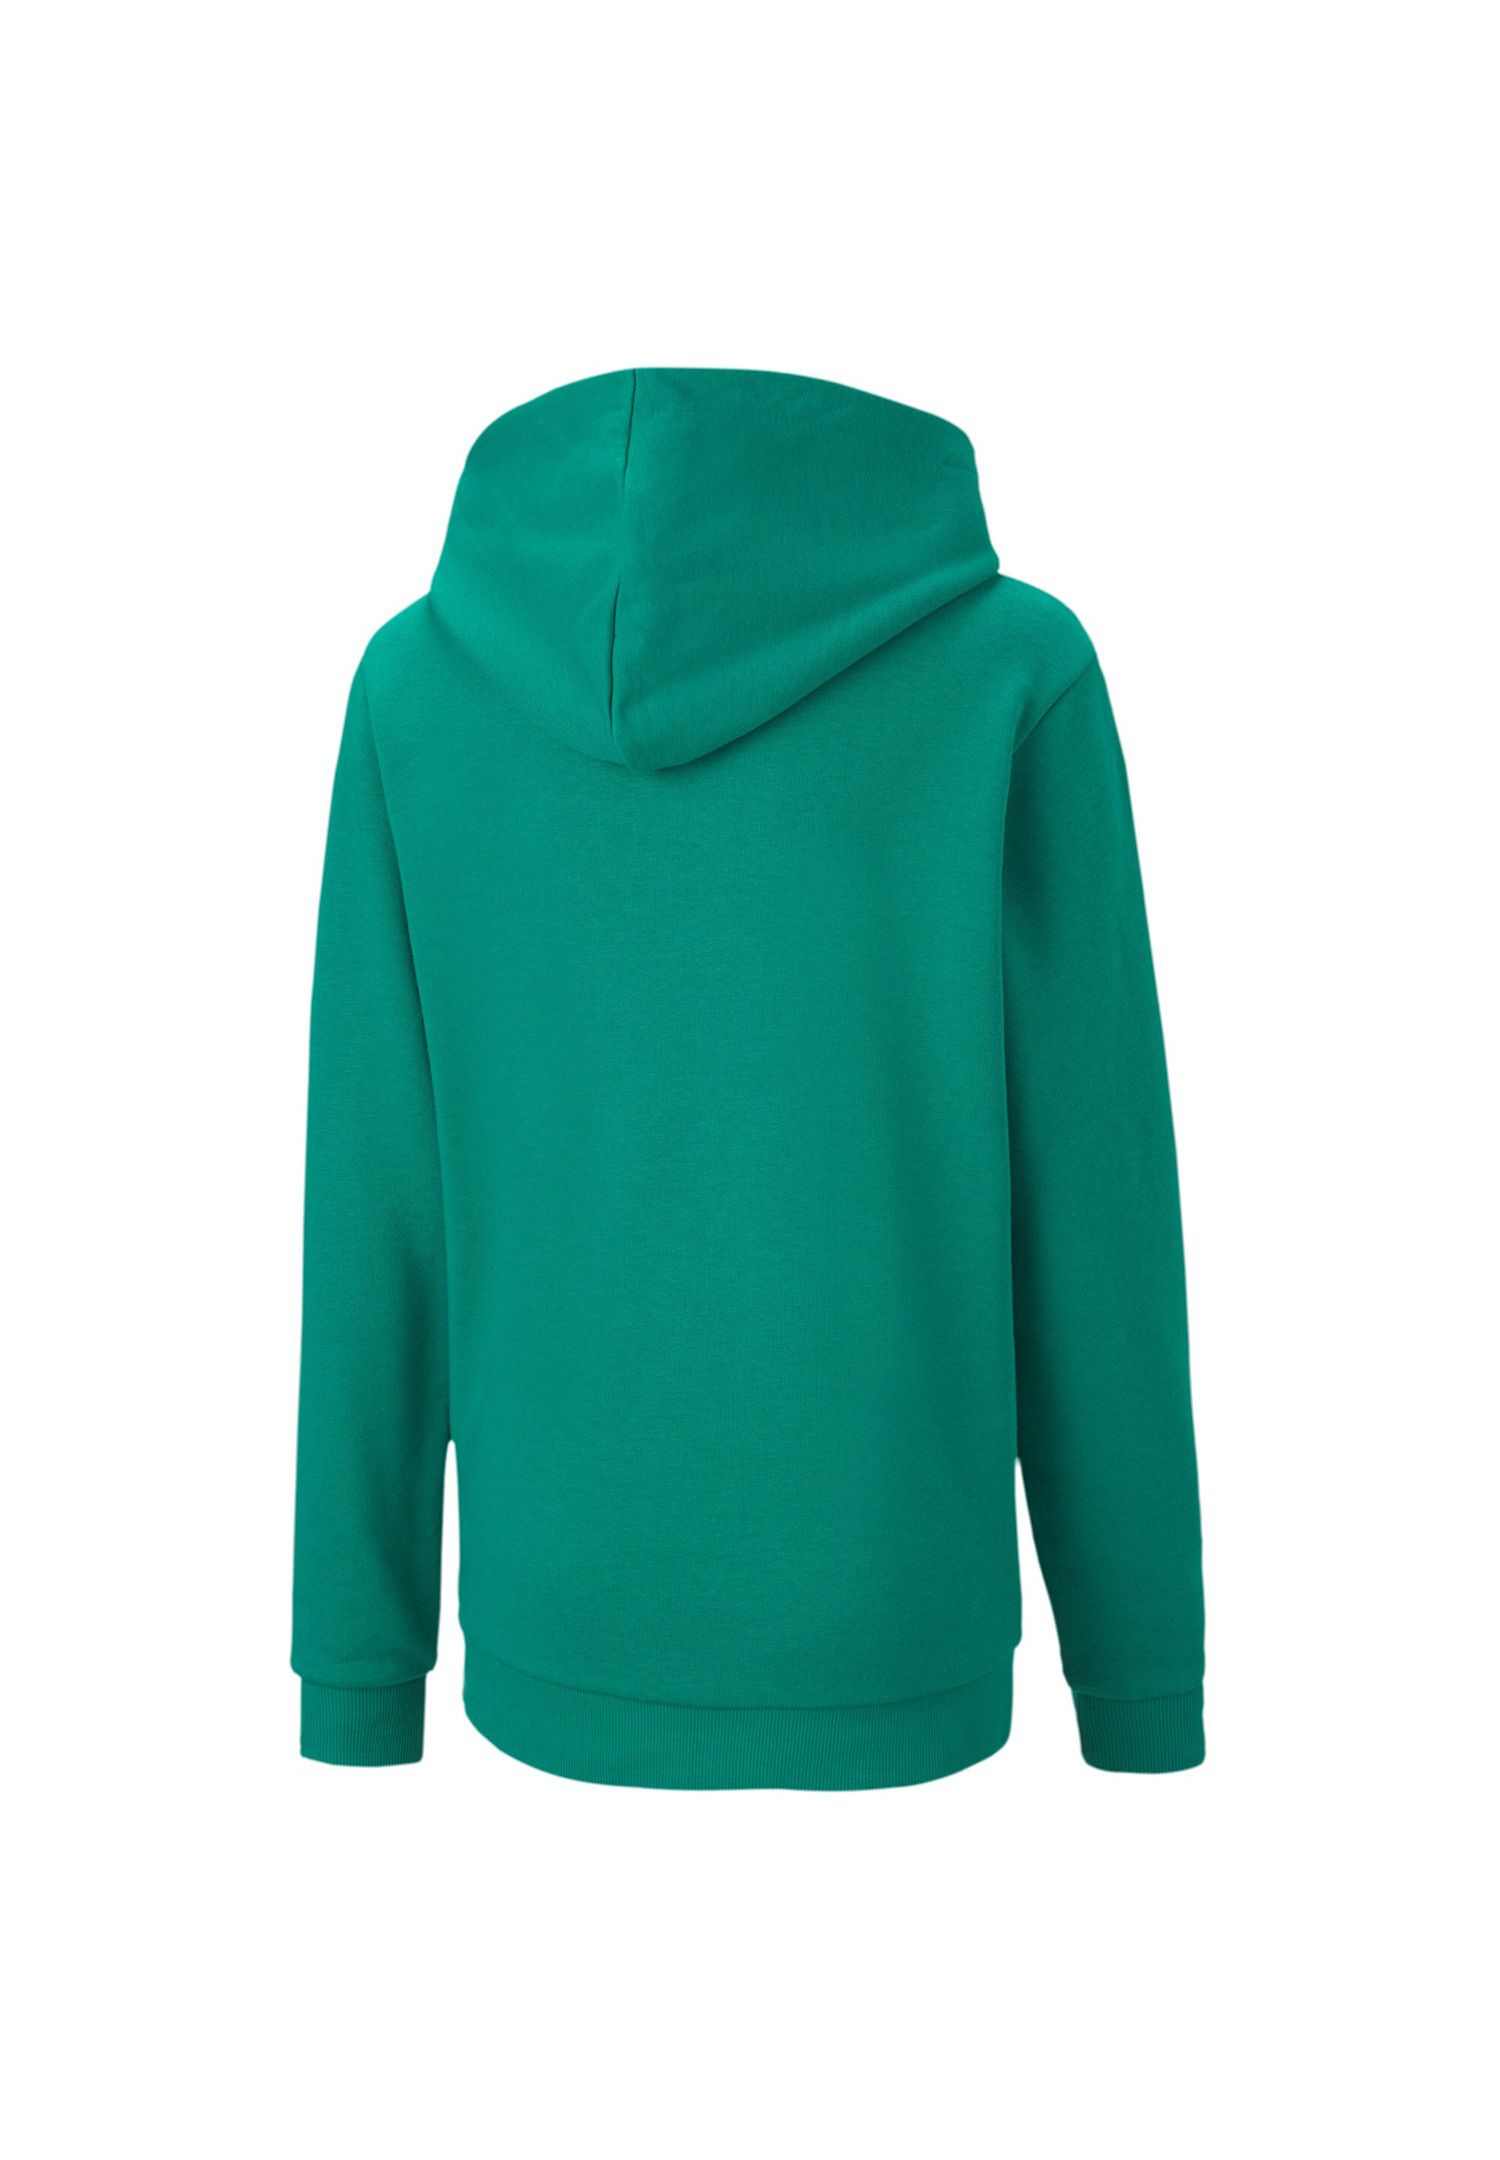 PUMA Kinder teamGOAL 23 Casuals Hoody Sweatshirt Pullover 656711 grün 